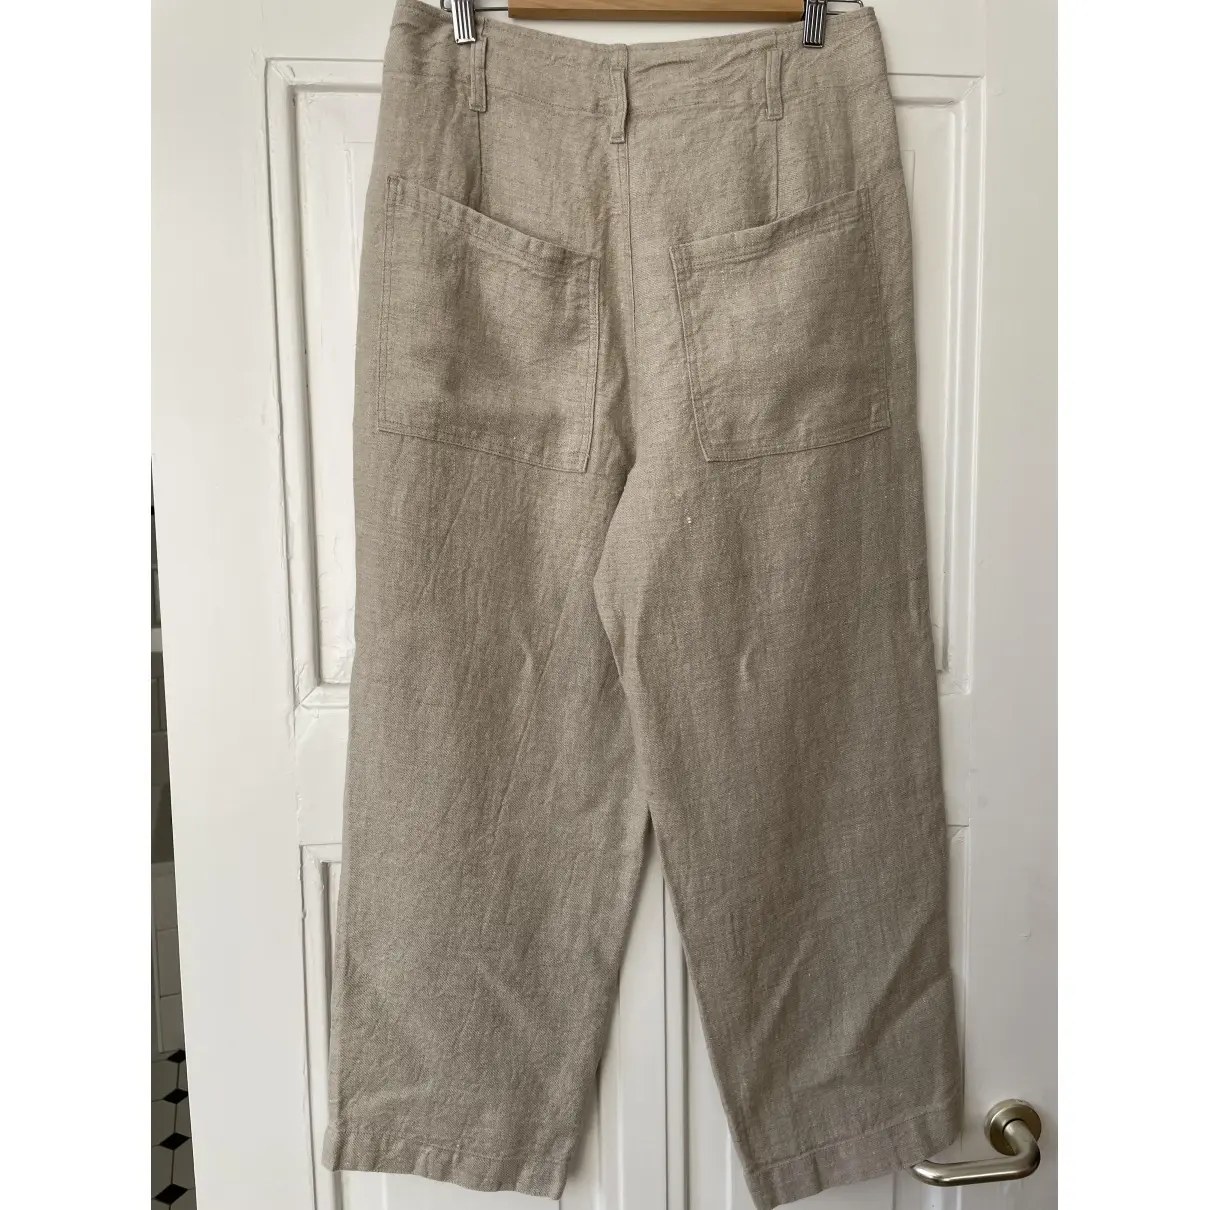 Buy COTÉLAC Linen large pants online